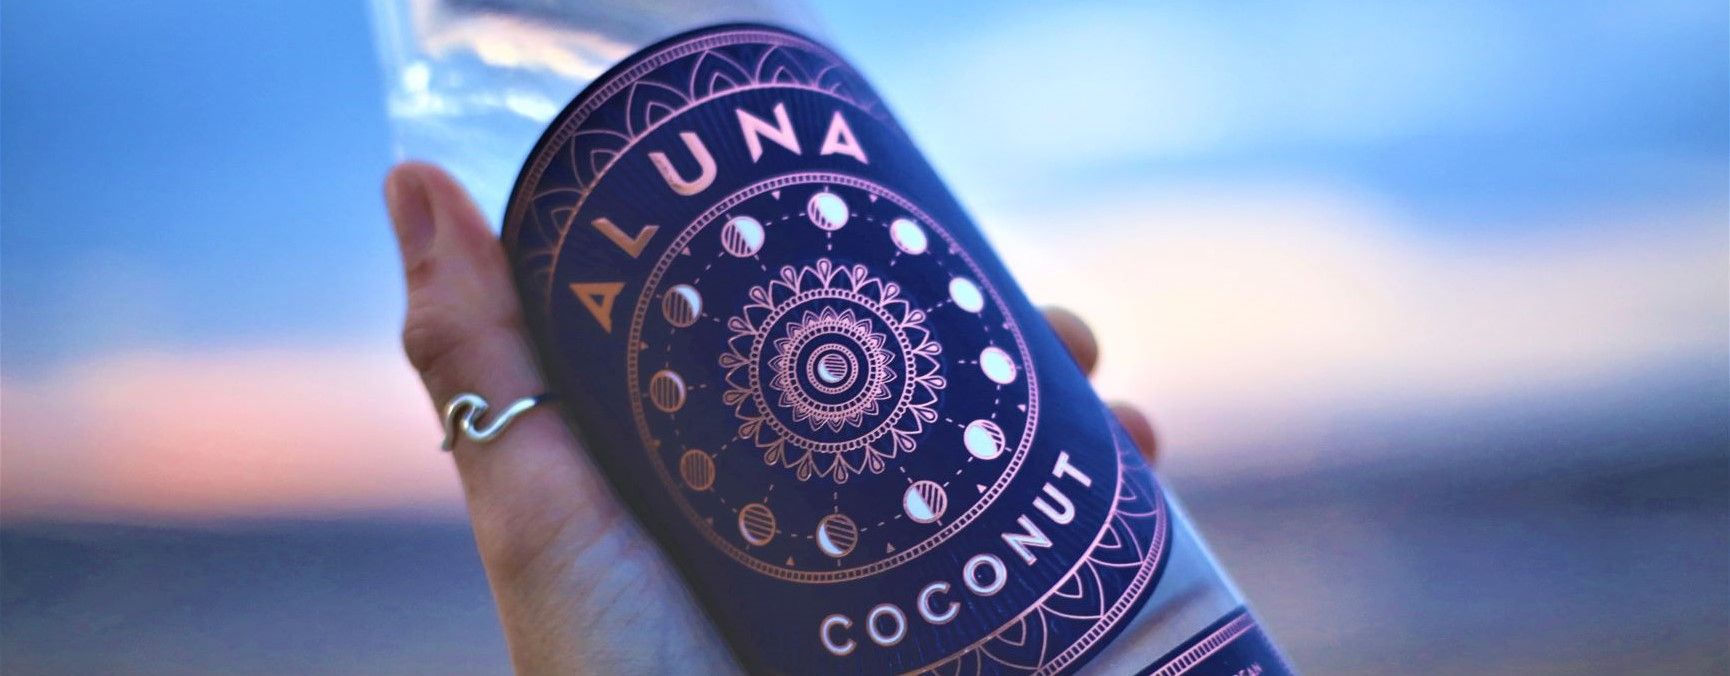 Aluna Coconut 